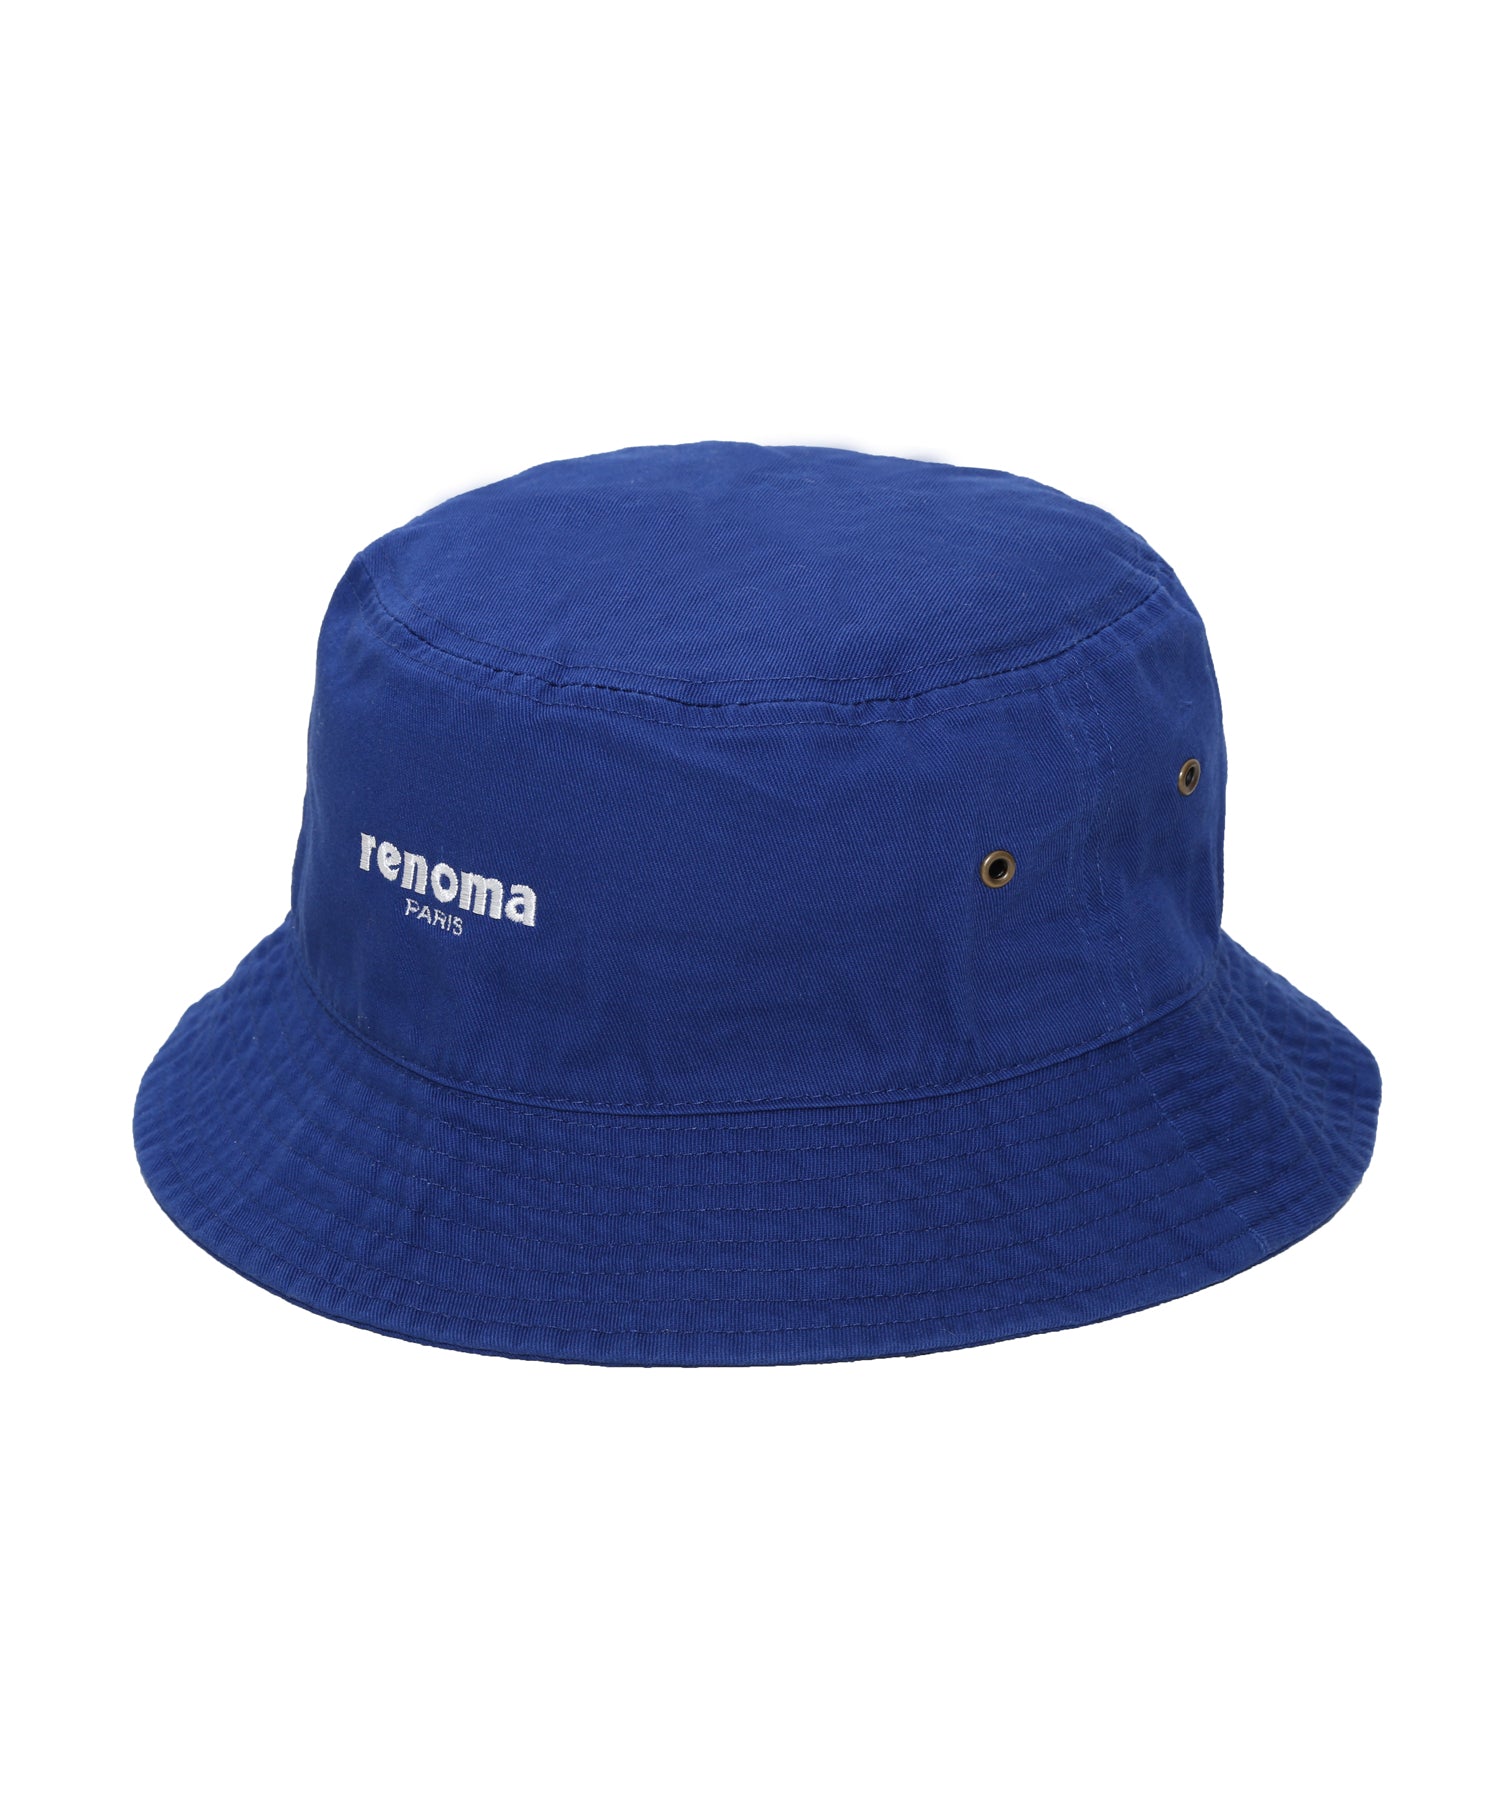 CAP/HAT – renoma golf